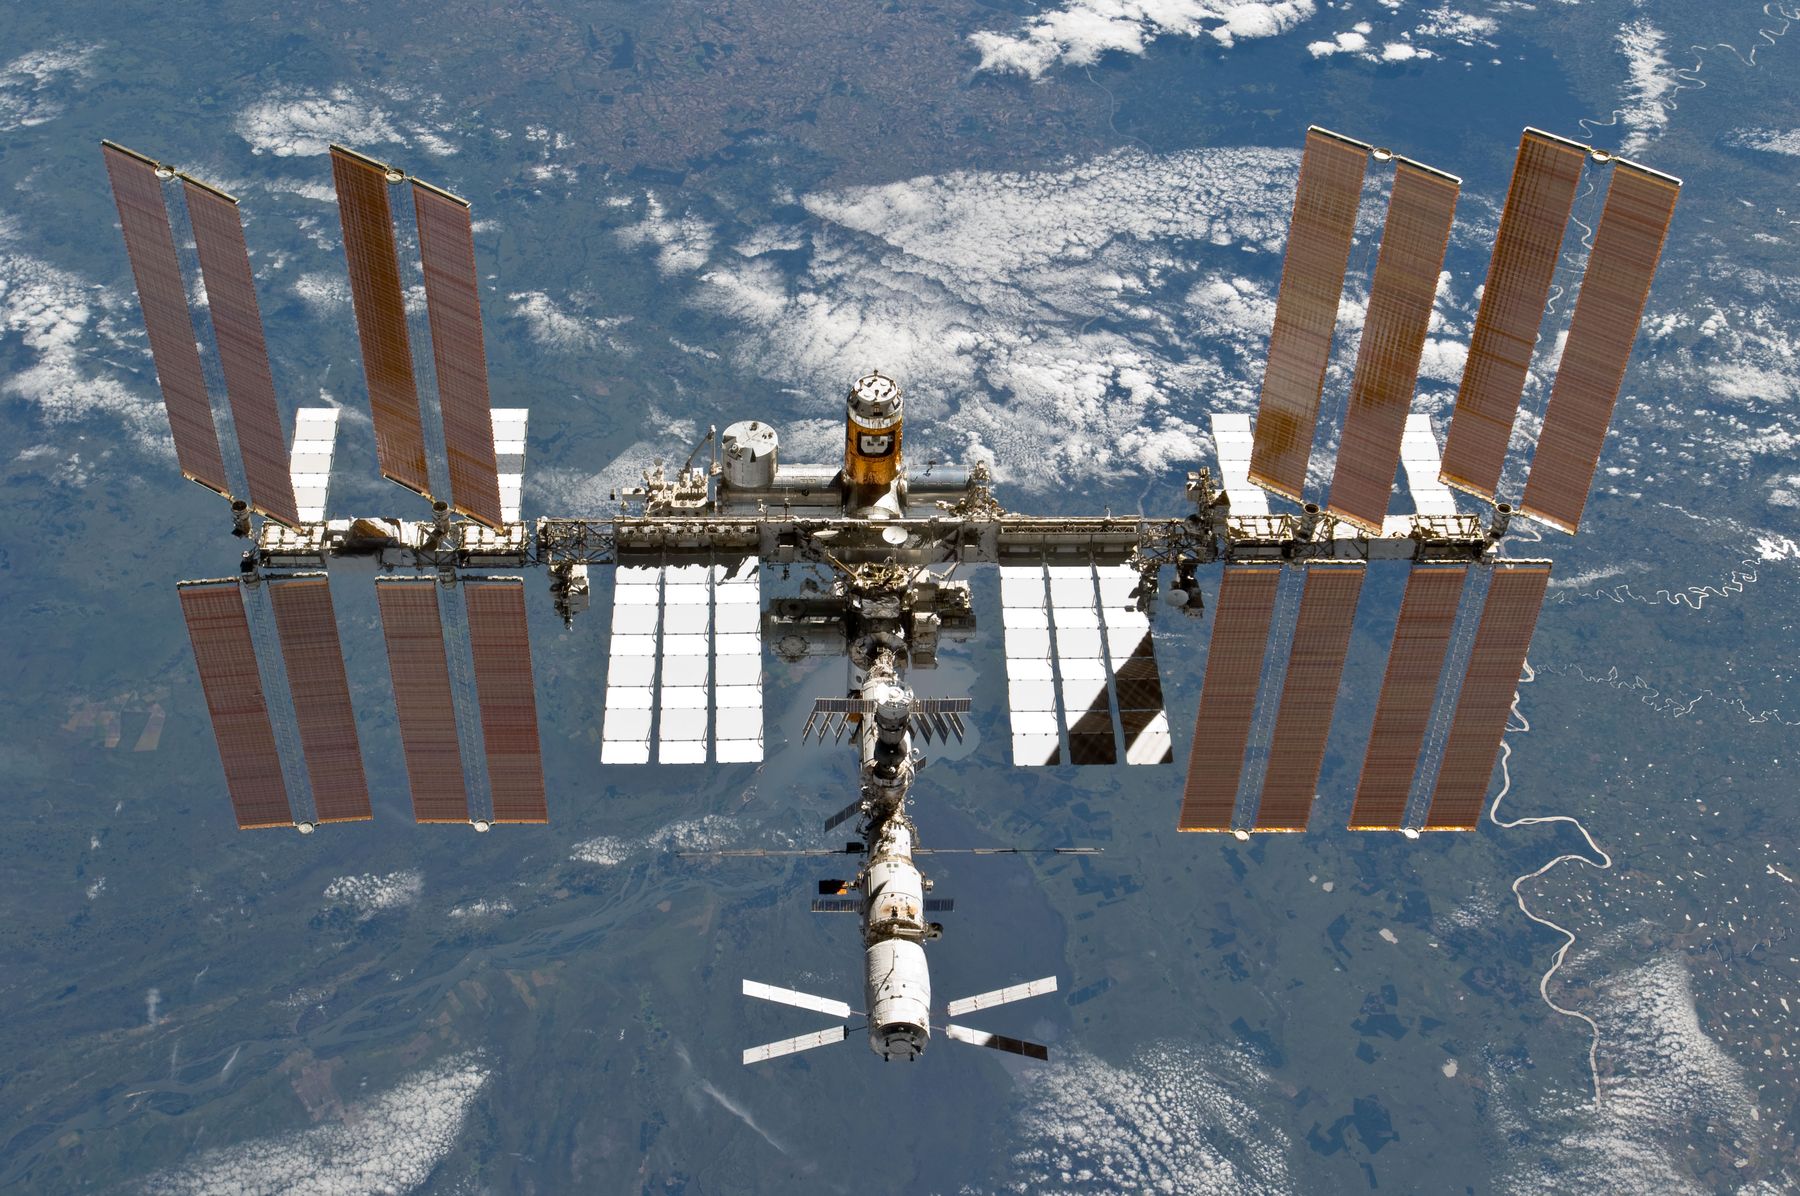 นักบินอวกาศตรวจพบรูรั่วบนสถานีอวกาศนานาชาติด้วย “ใบชา”